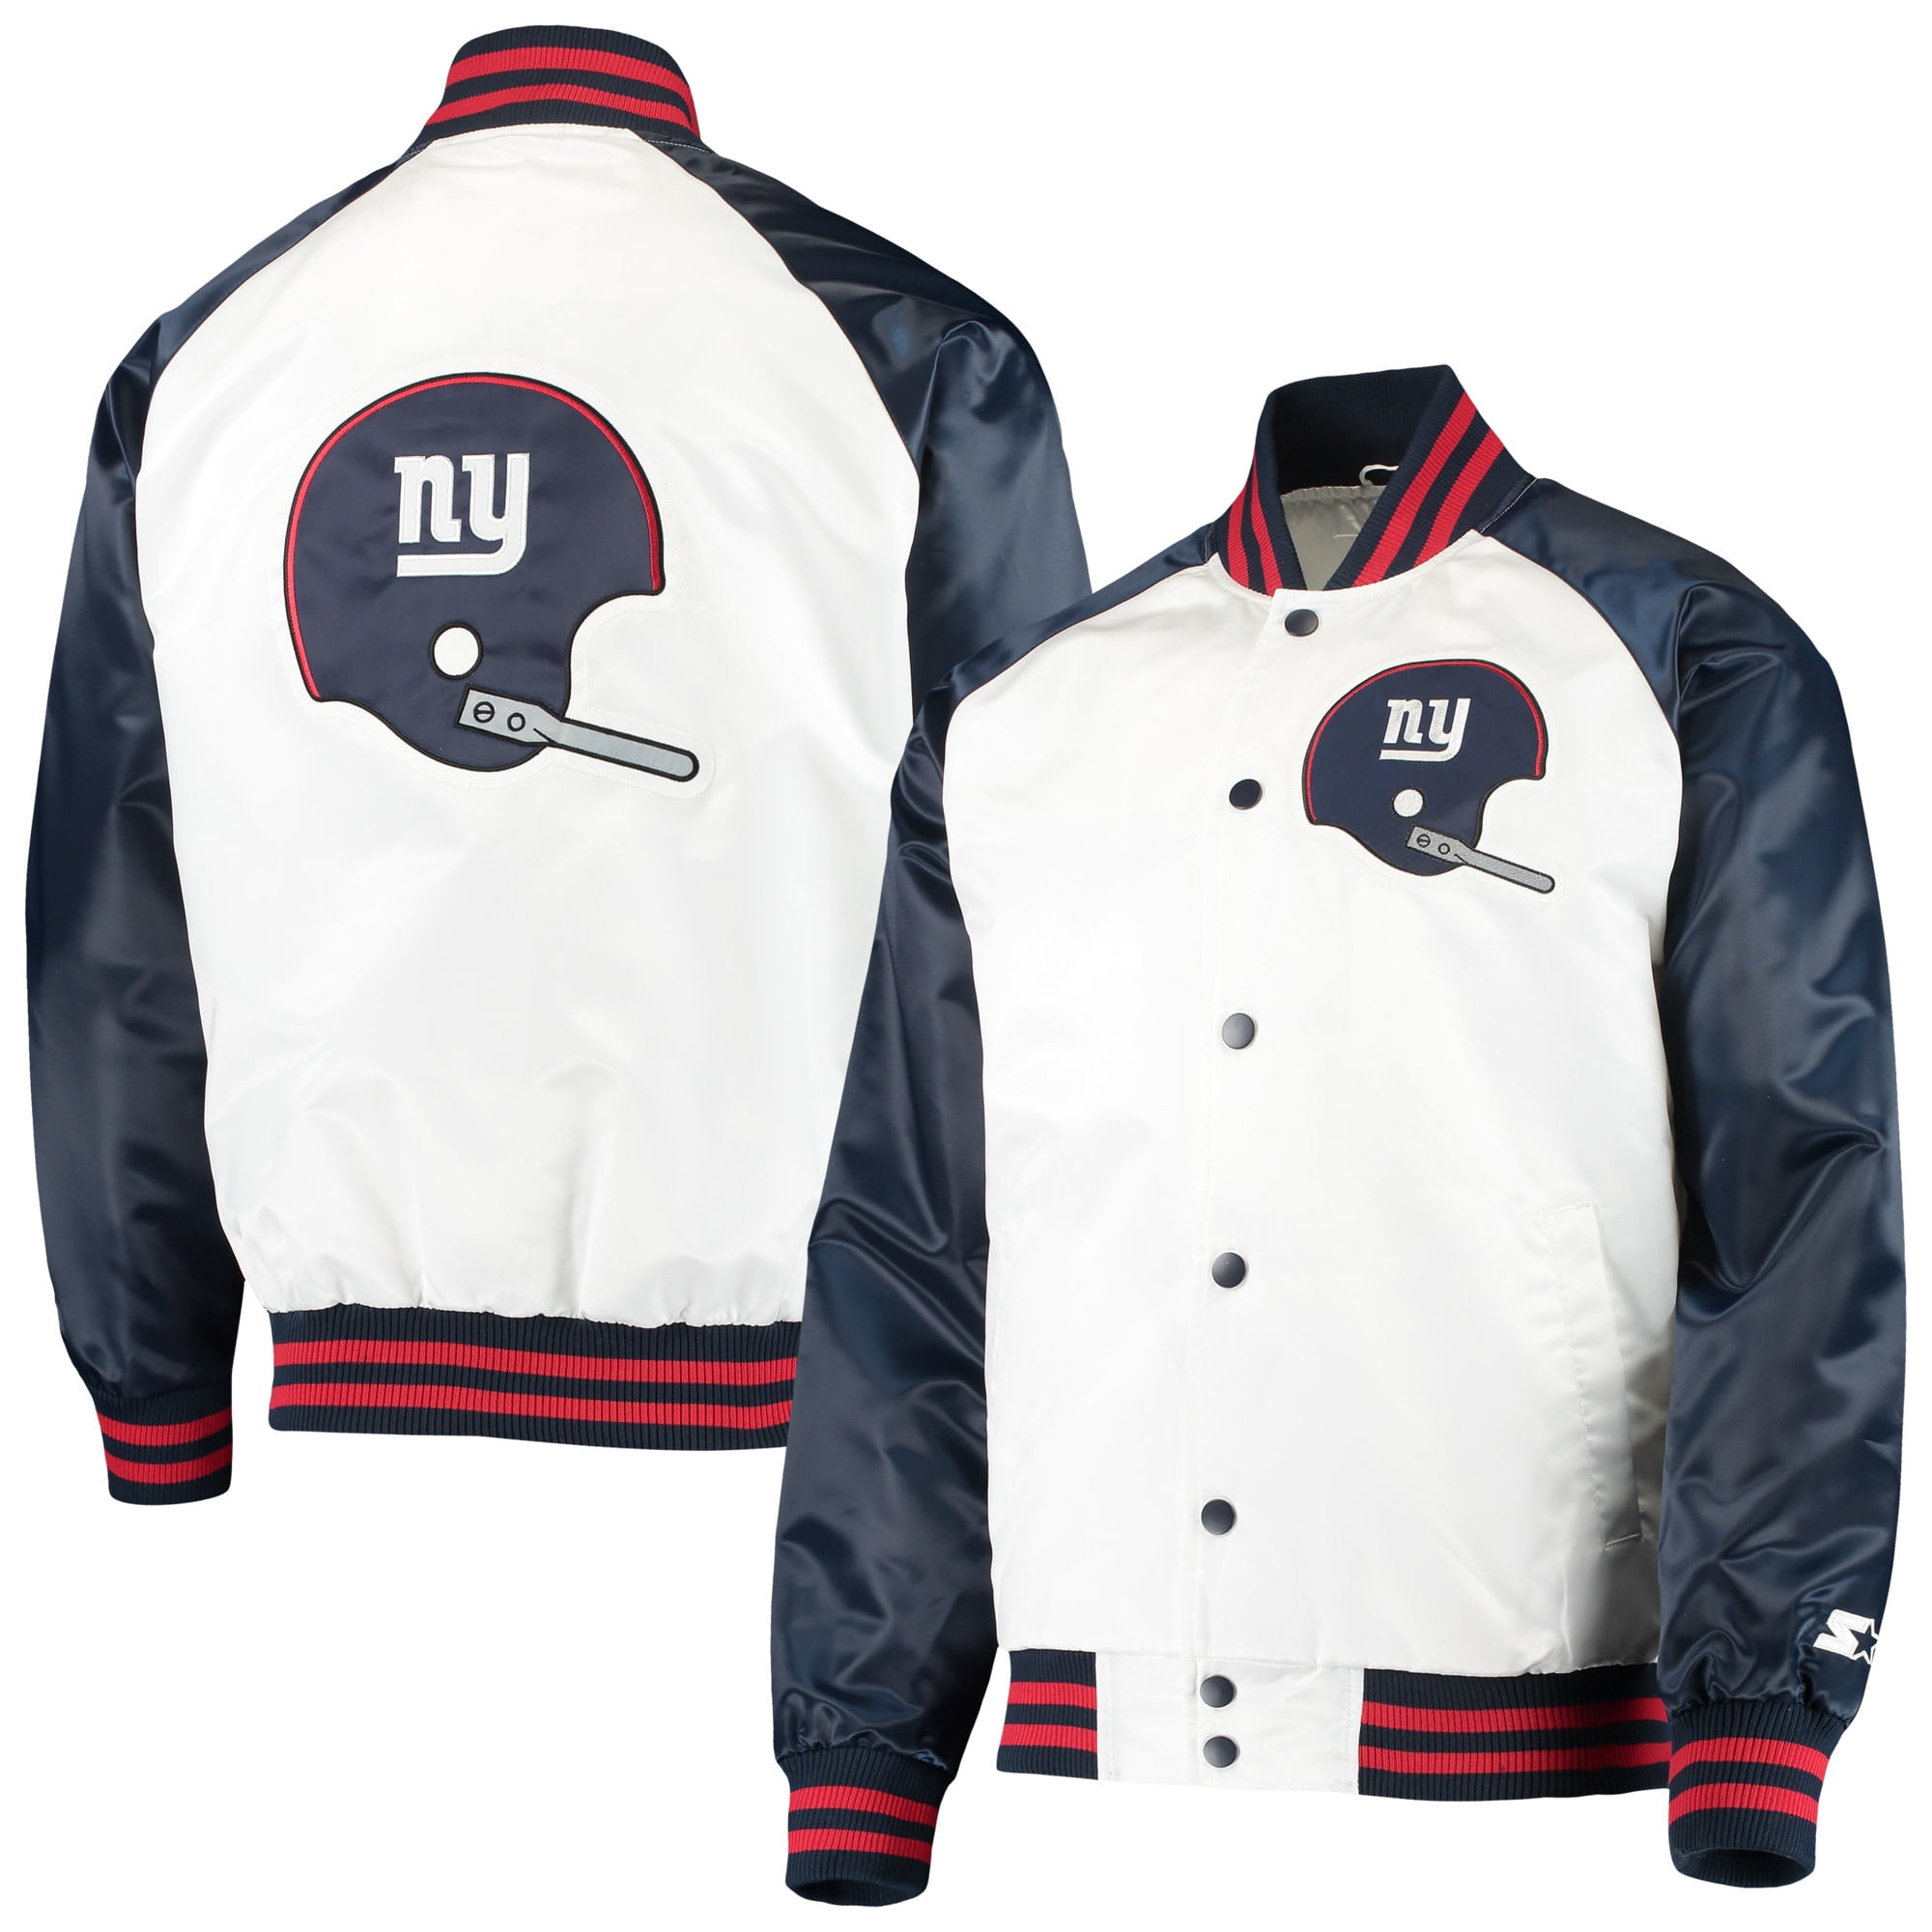 new york giants vintage jacket